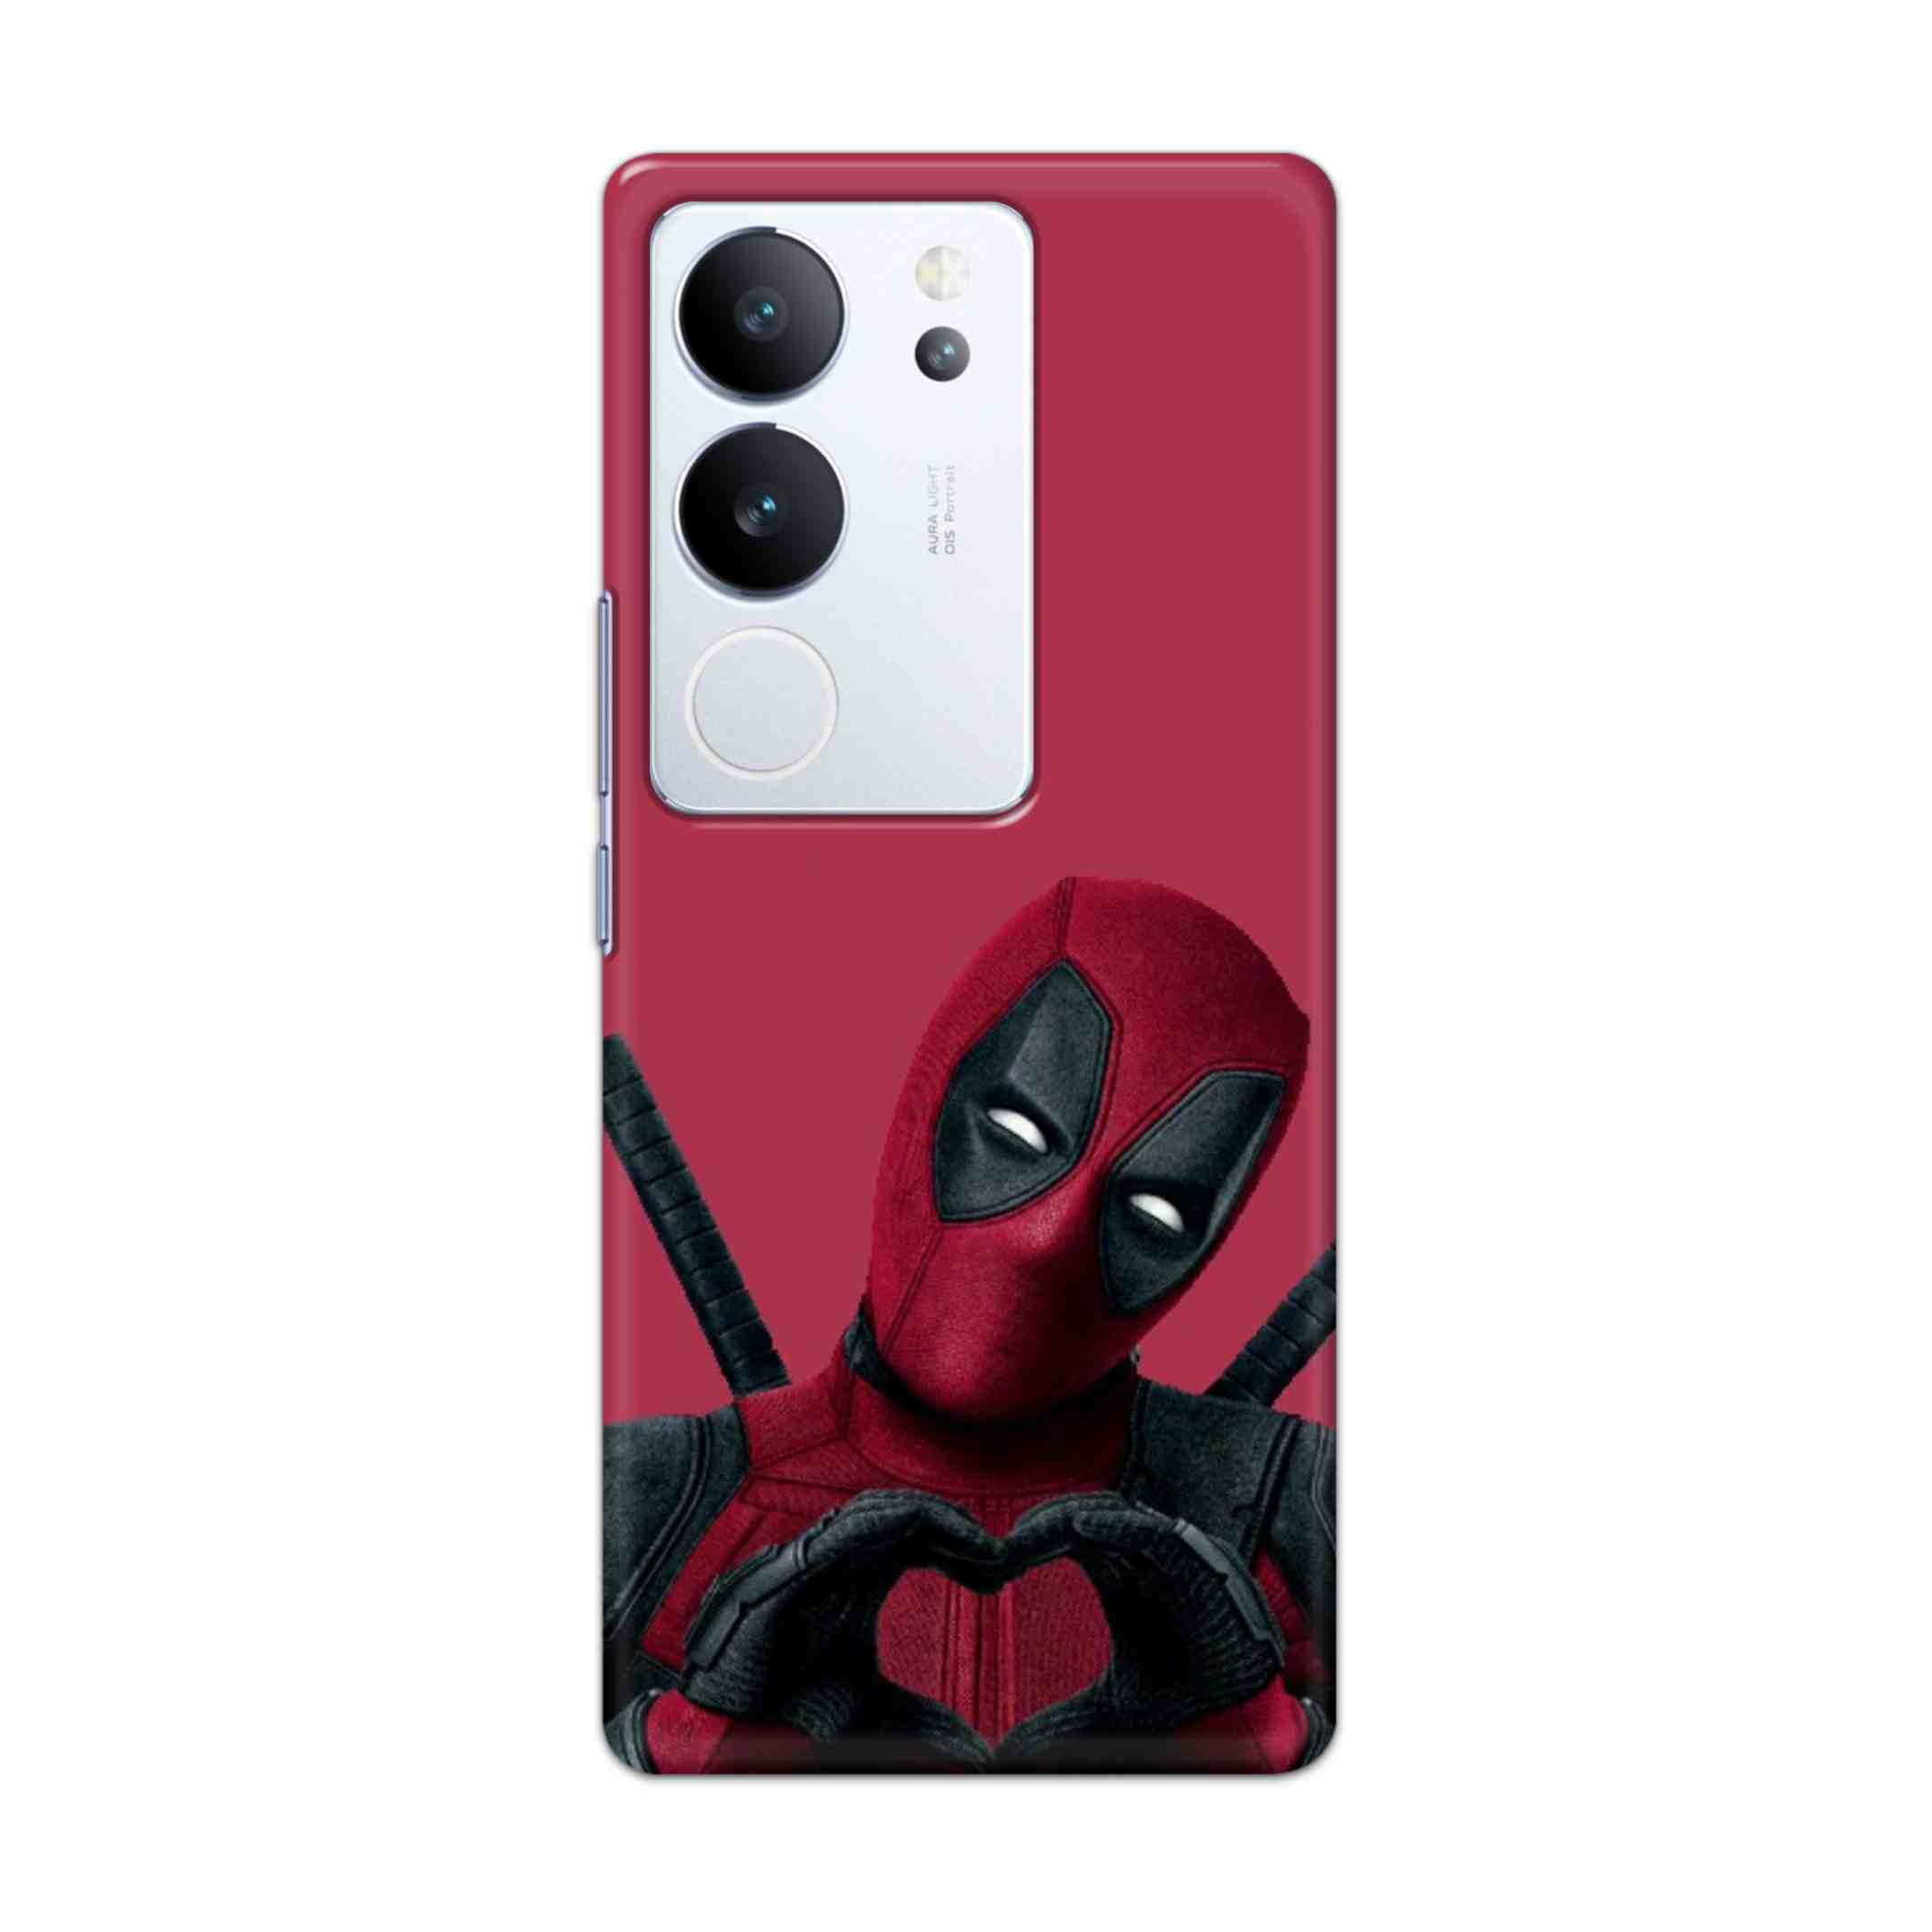 Buy Deadpool Heart Hard Back Mobile Phone Case/Cover For Vivo V29 / V29 Pro Online